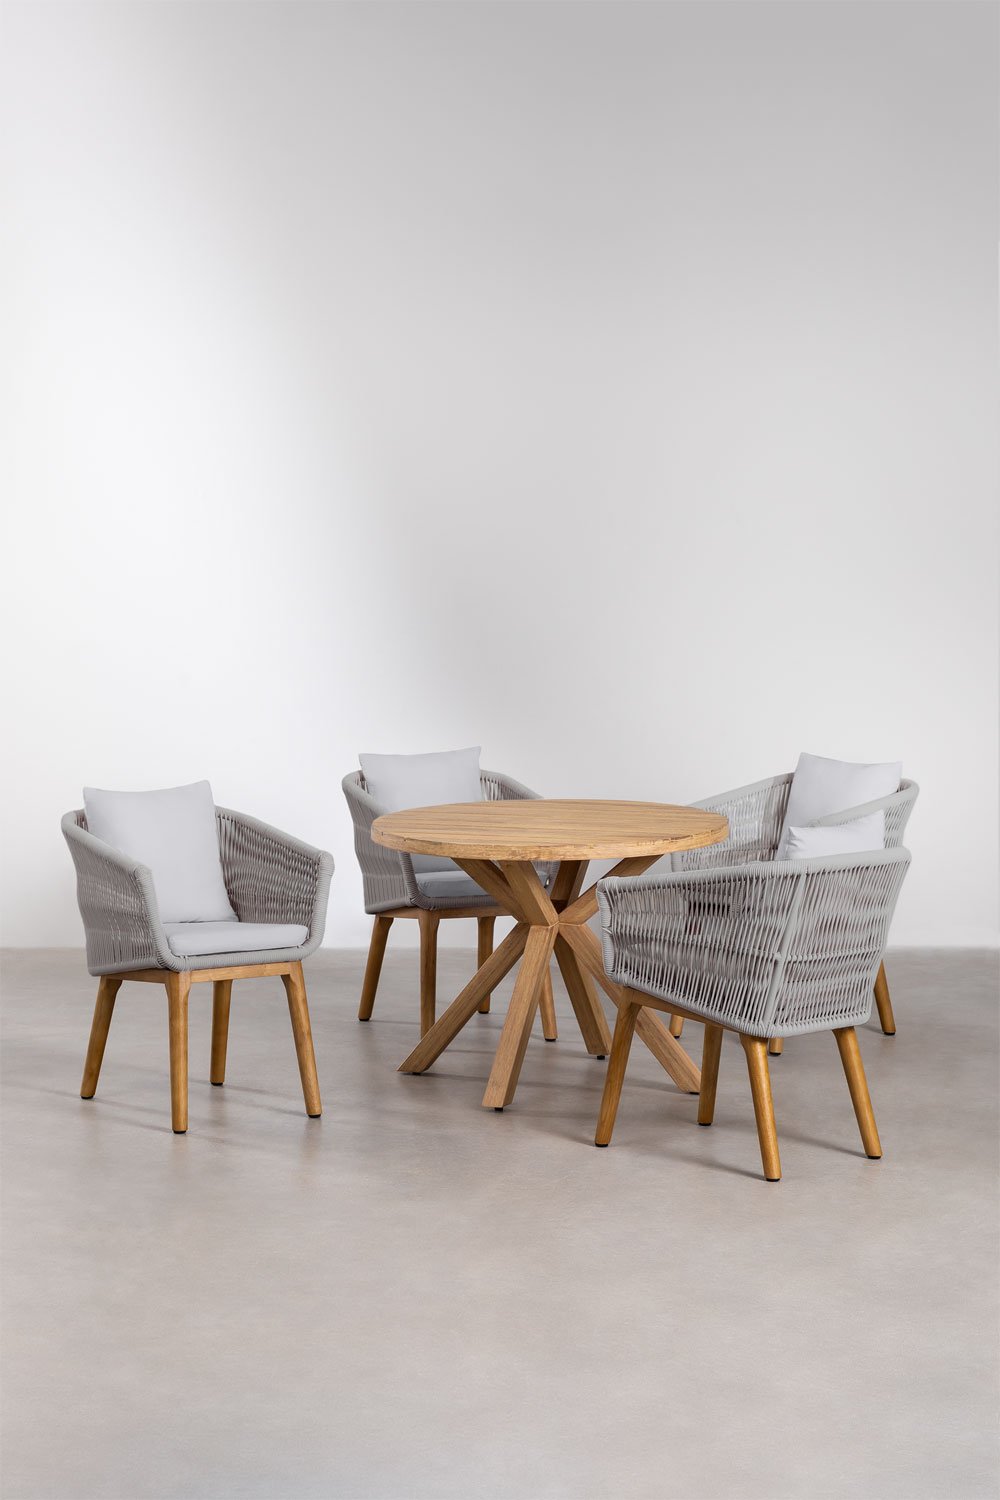 Set van ronde houten tafel (Ø100 cm) Naele en 4 Barker tuinstoelen, galerij beeld 1